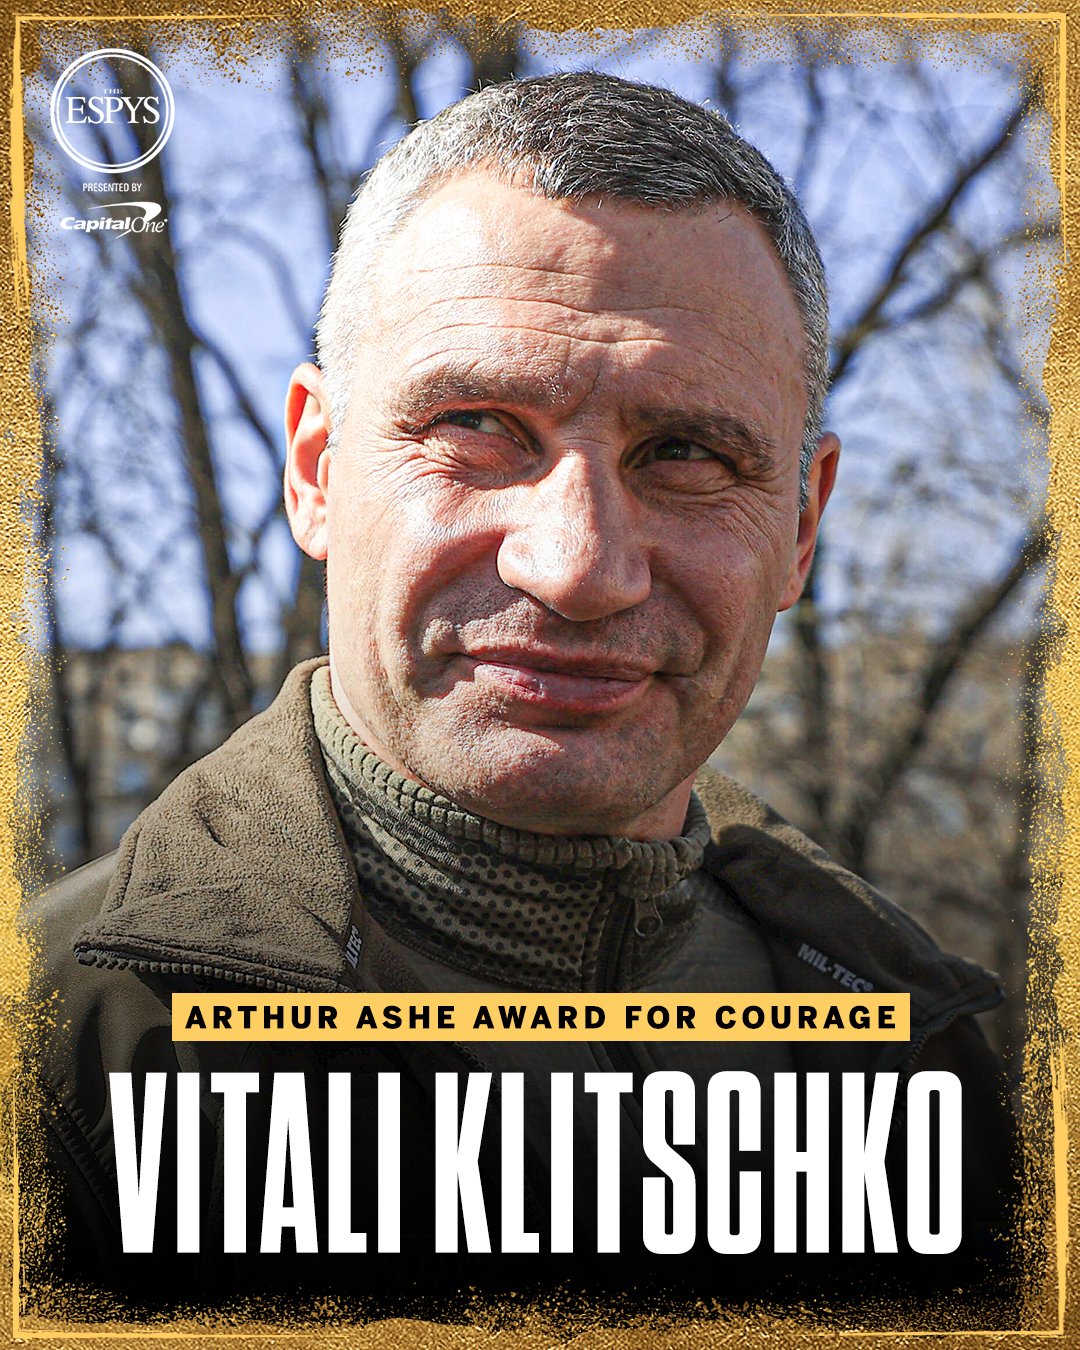 Vitali Klitschko boxing image / photo